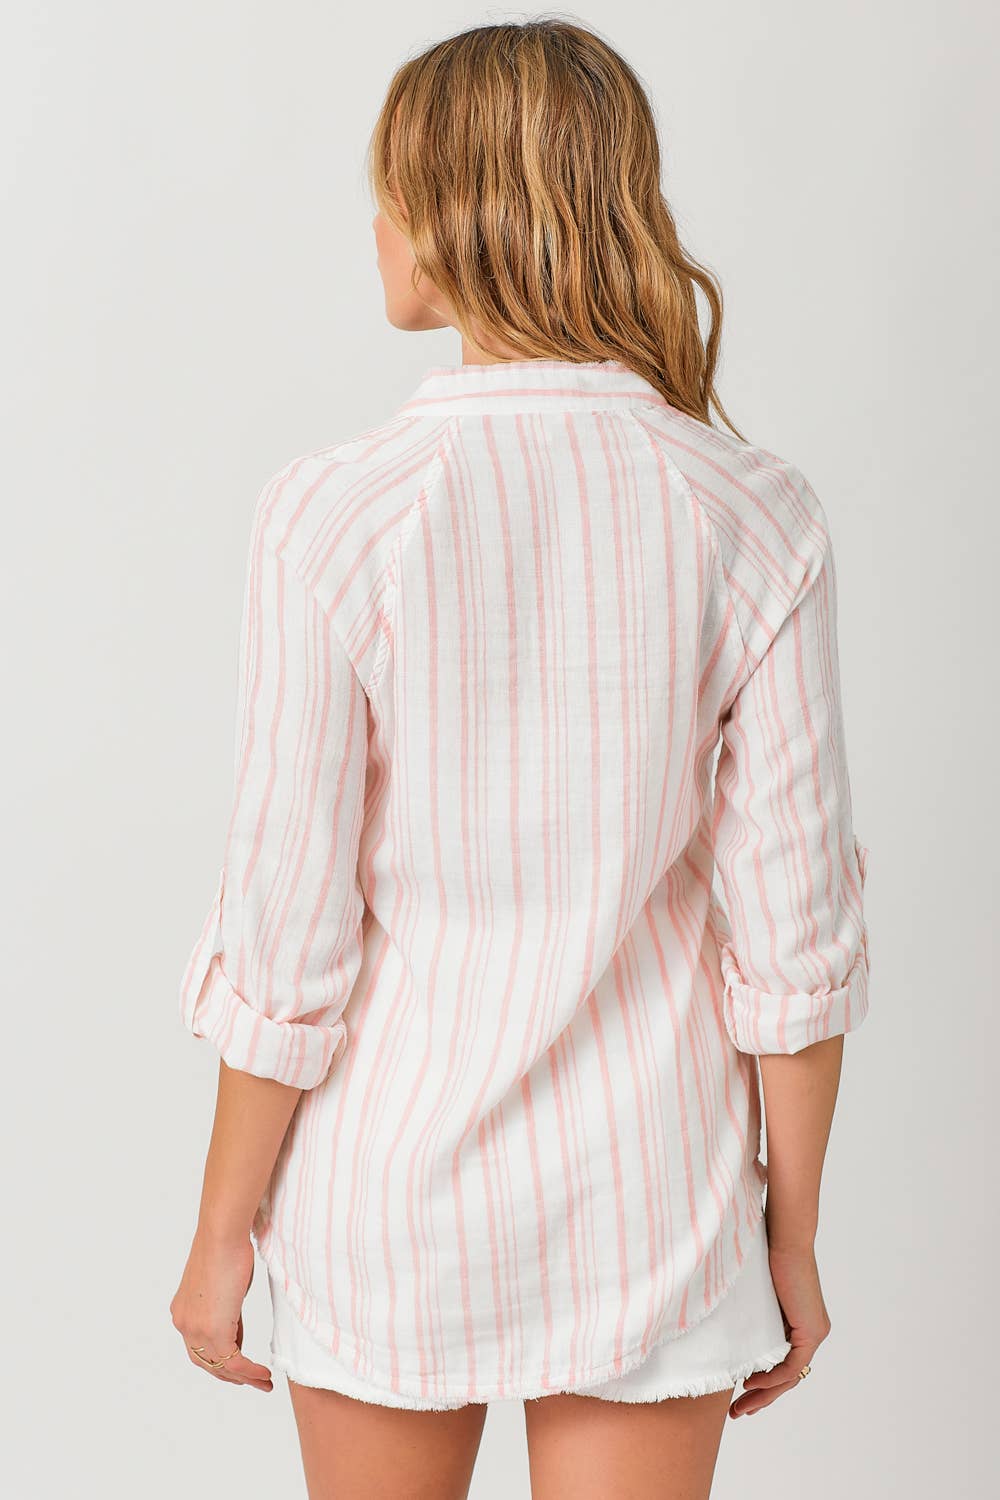 Fray Bottom Stripe Shirt Blush Stripe Spring-Summer Mystree